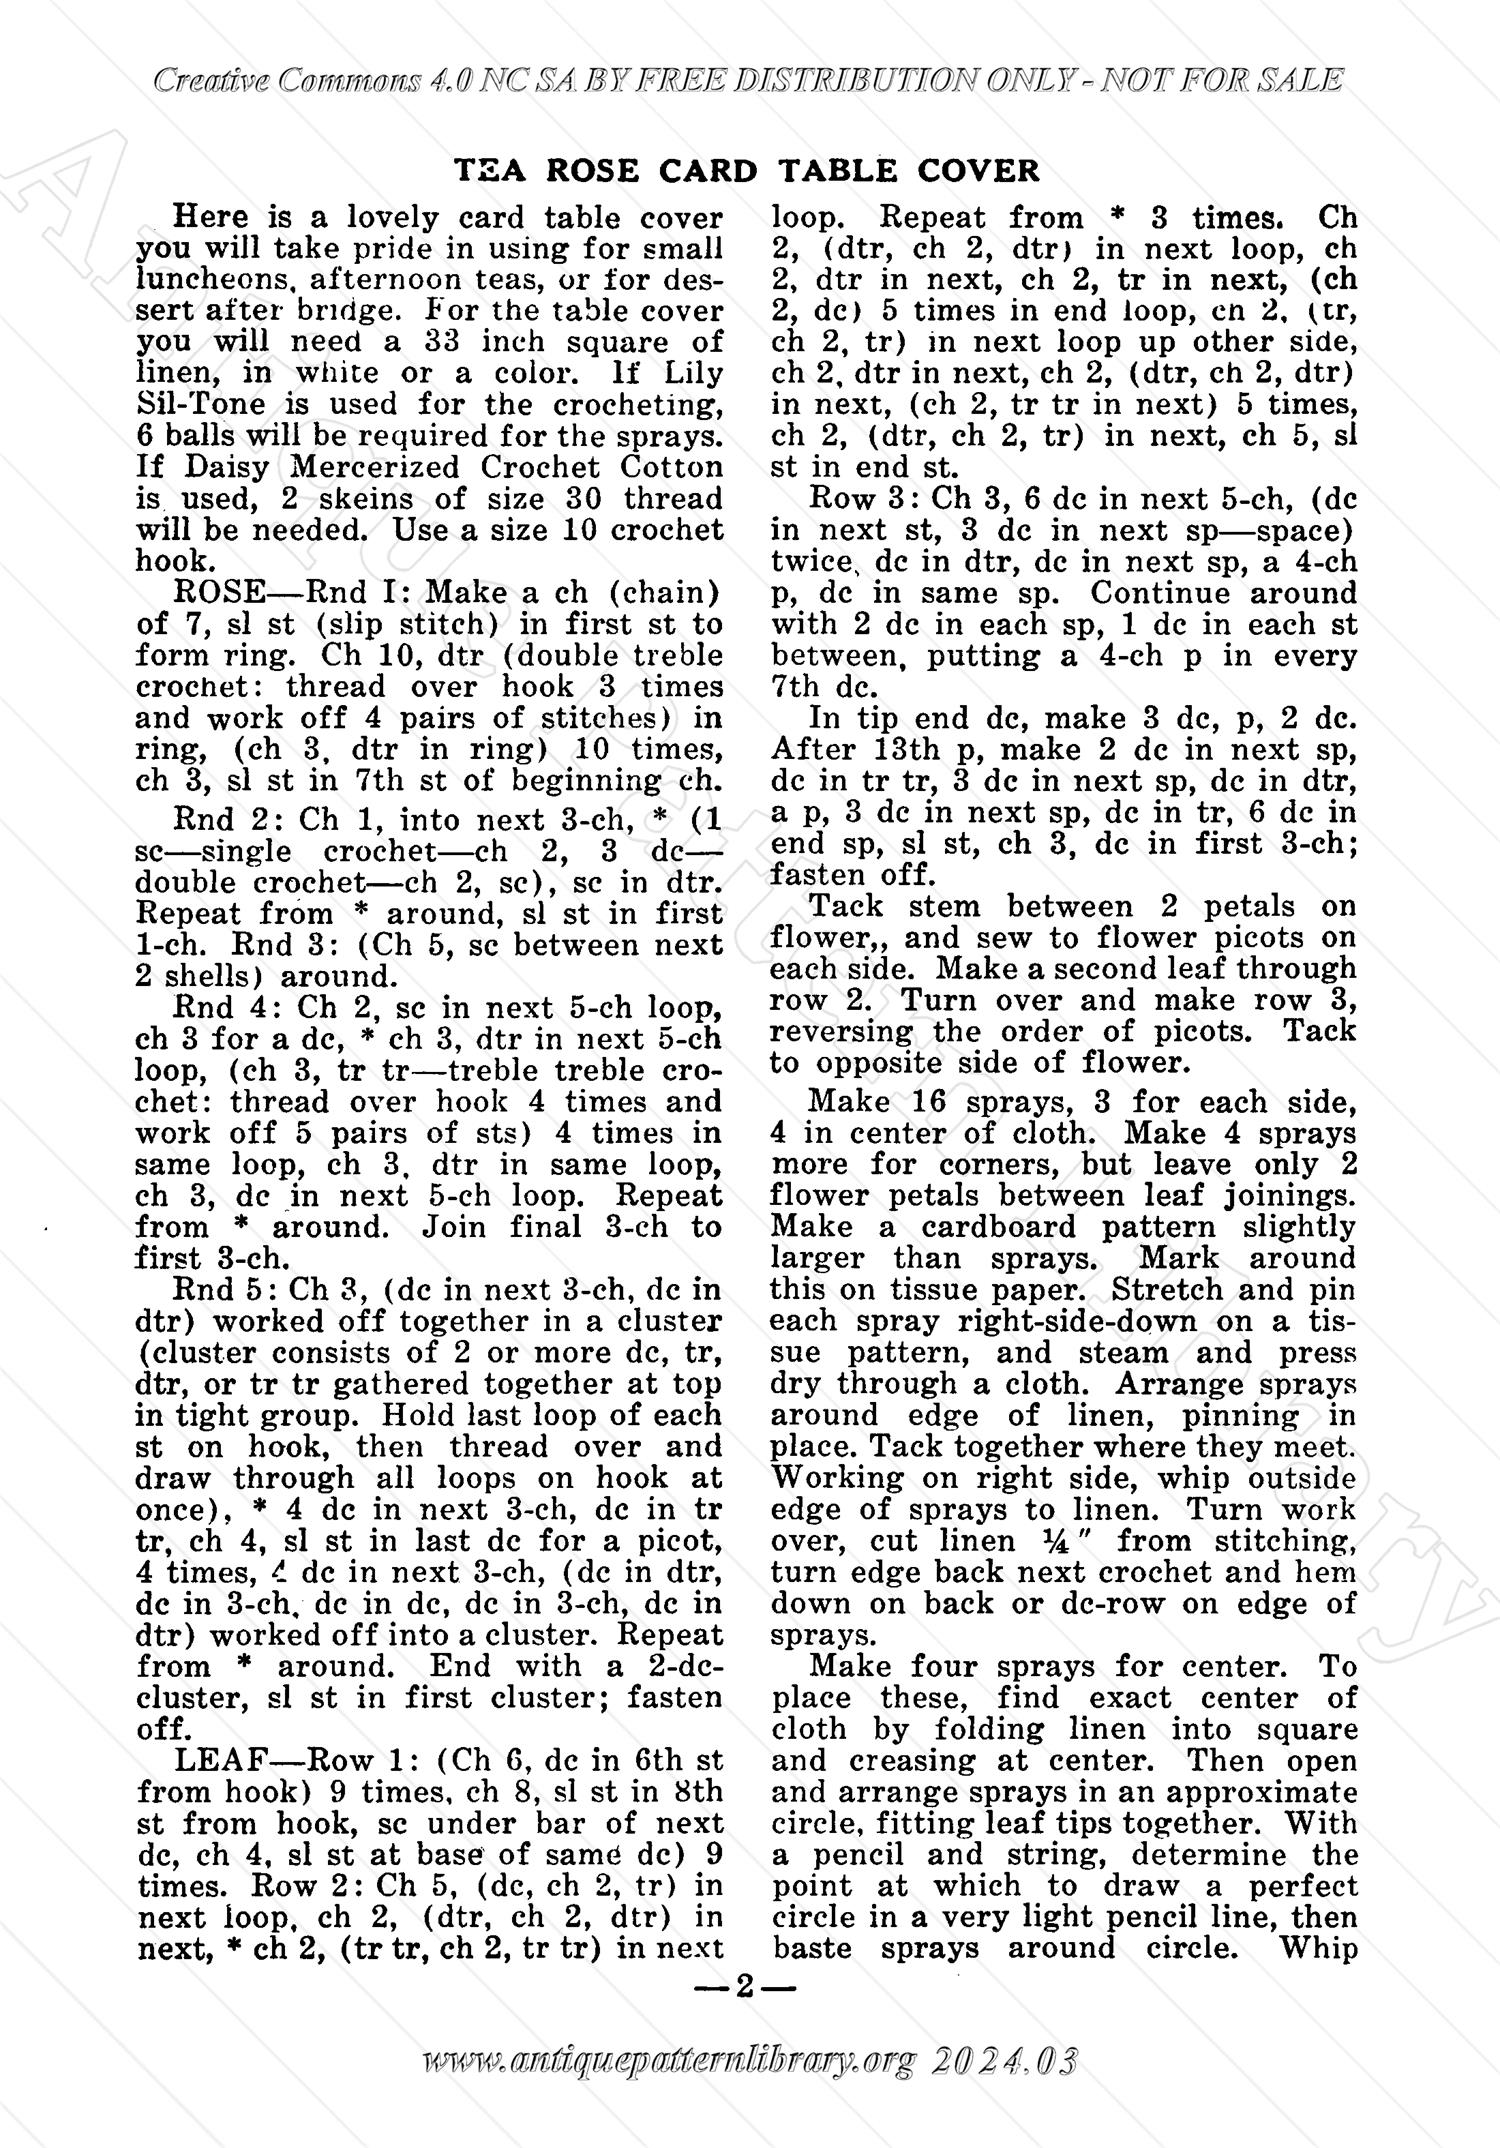 I-WB125 The Workbasket Volume 12 Number 2 November 2-934